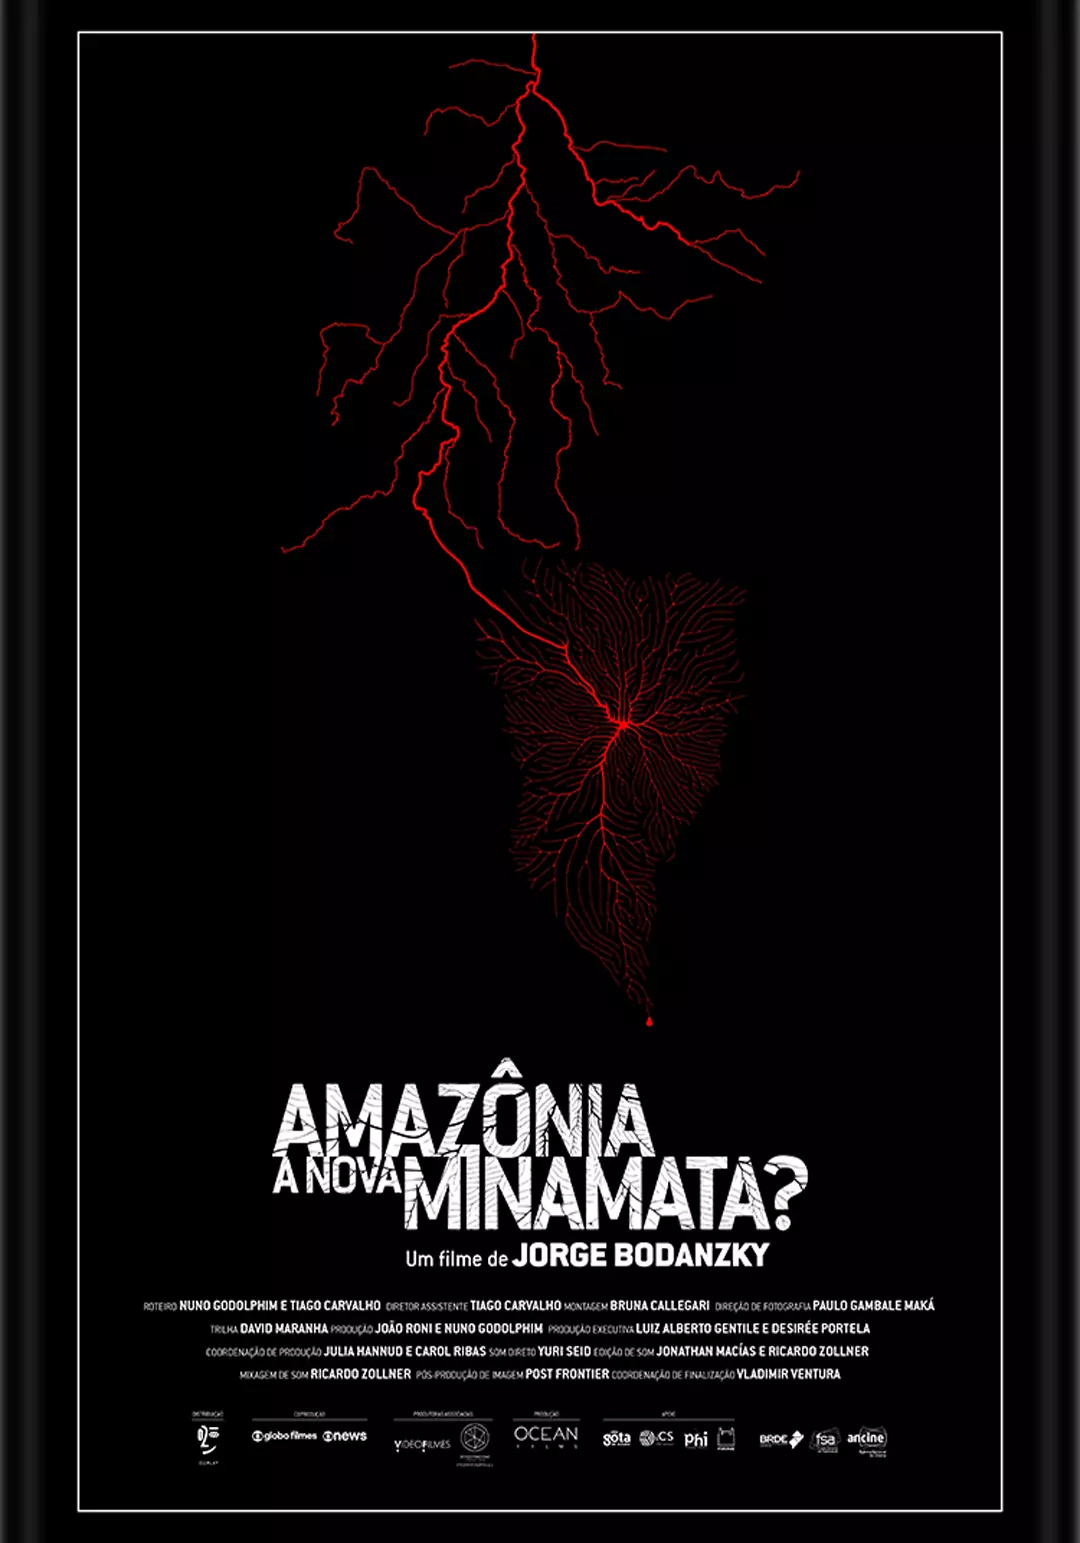 Amazonia. ¿La nueva Minamata?, Jorge Bodanzky, nuestra américa, por sección, 18 docsmx